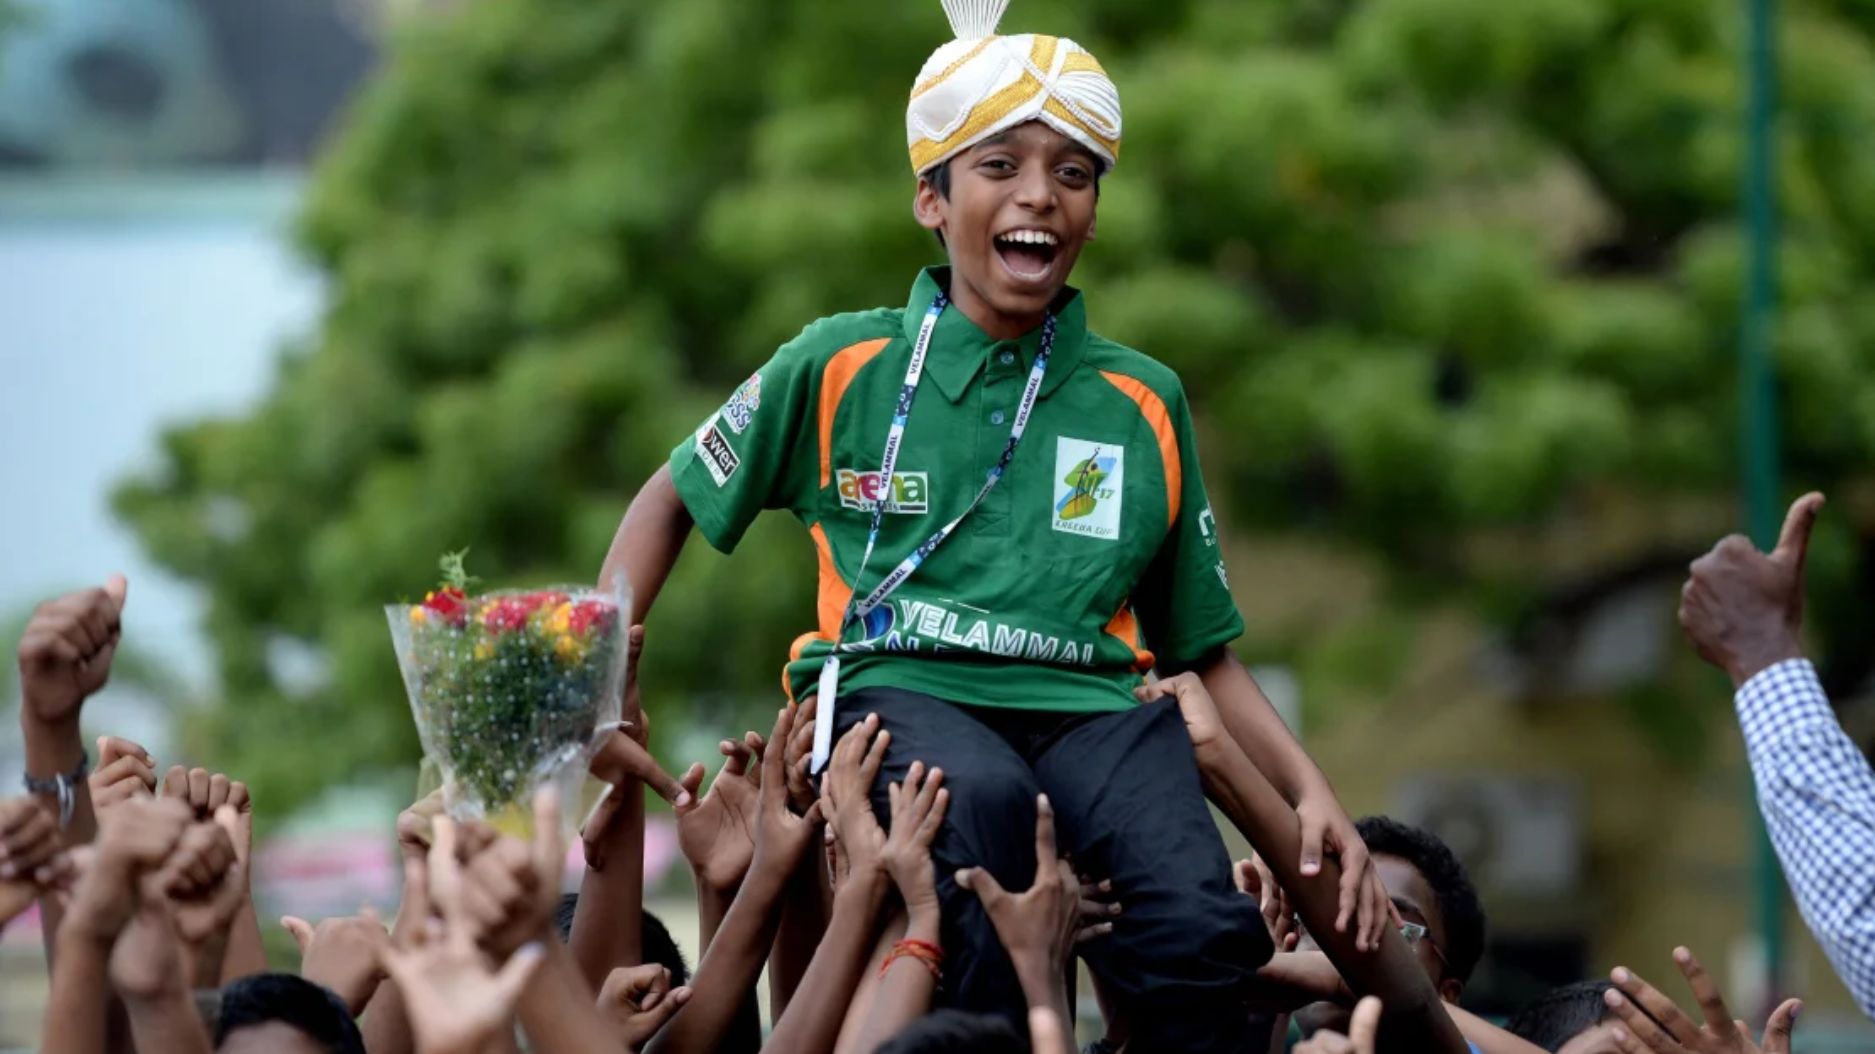 Praggnanandhaa Rameshbabu obtuvo el estatus de gran maestro en 2018, y aquí se le ve celebrando en Chennai. (Crédito: Arun Sankar/AFP/Getty Images)